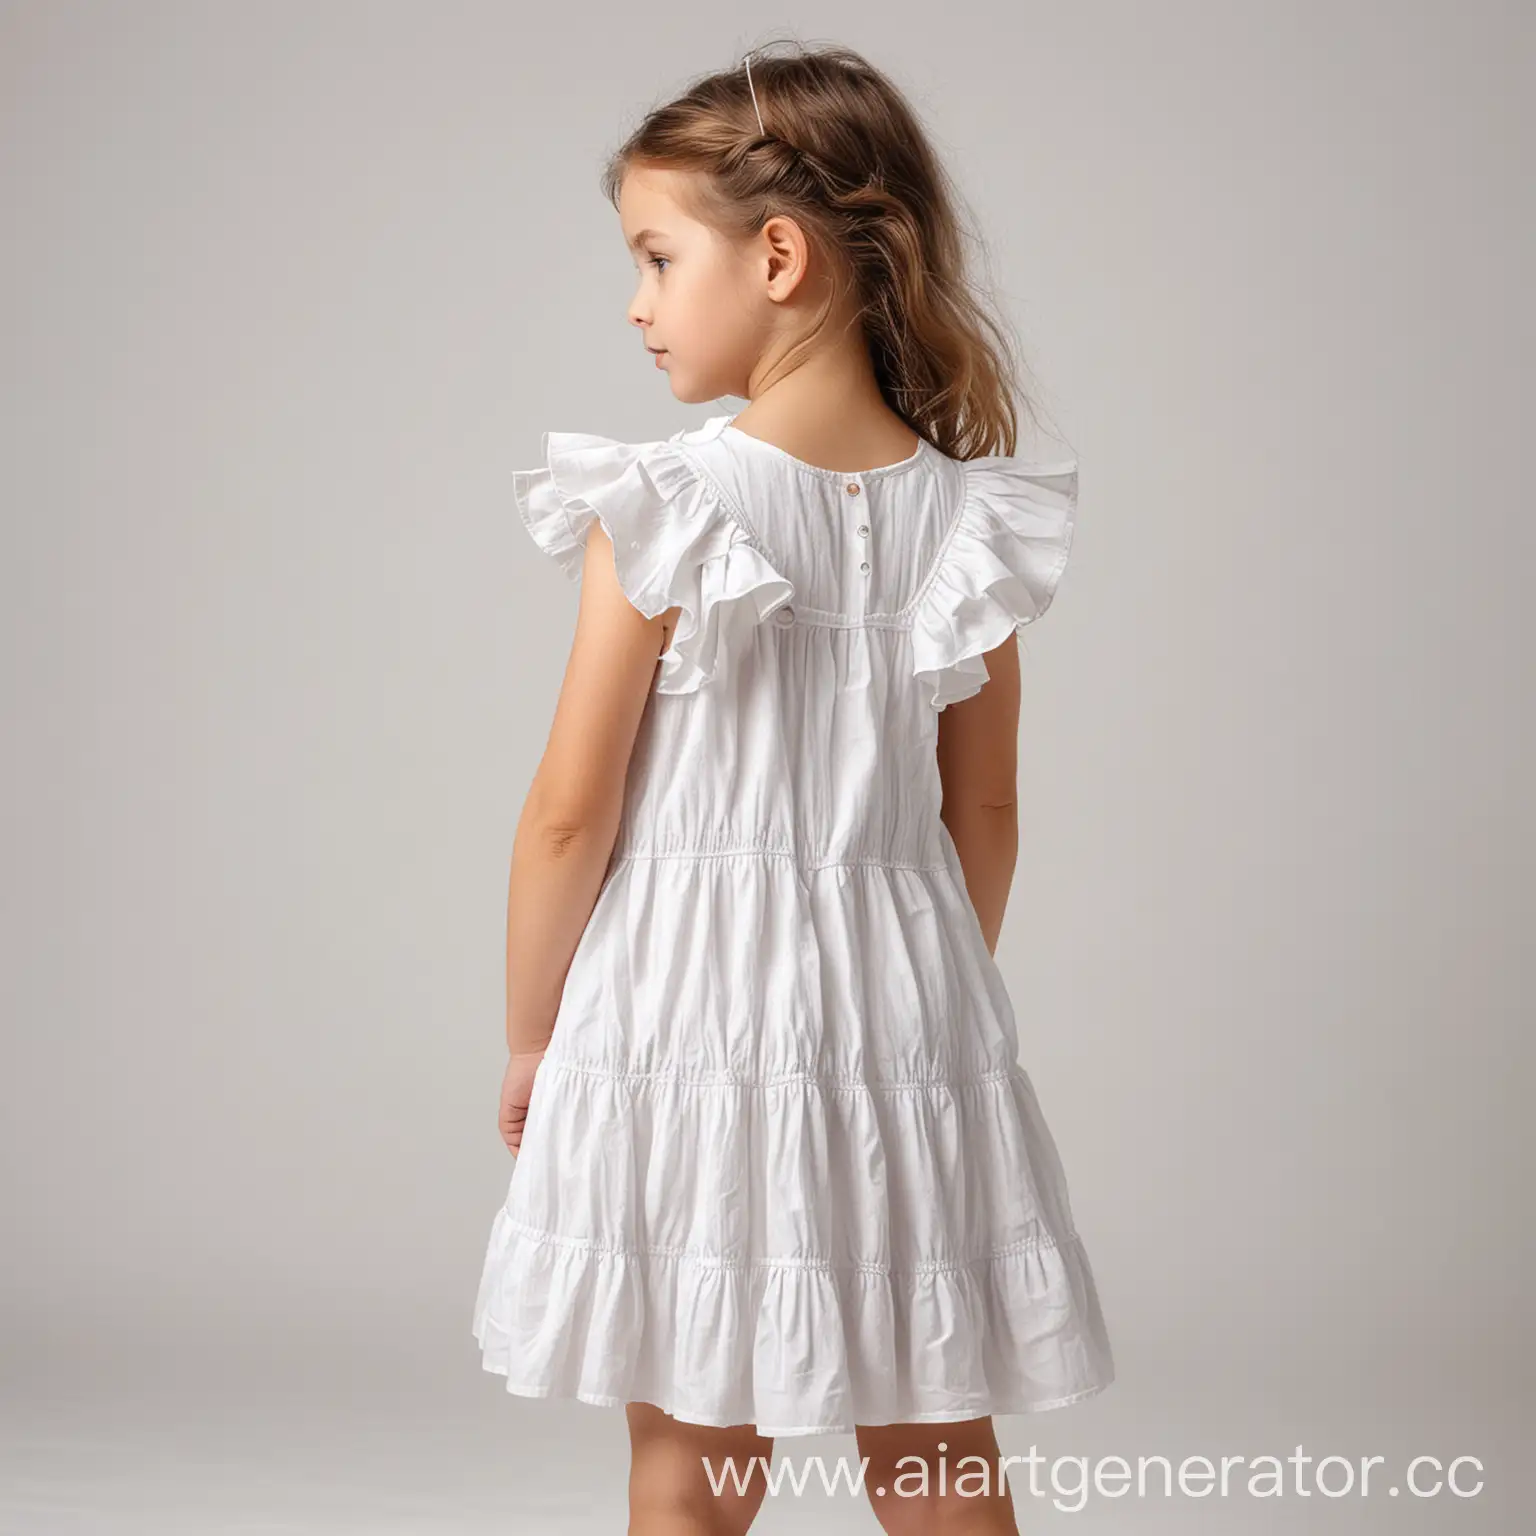 девочка в белом летнем платье с рюшами на белом фоне спиной